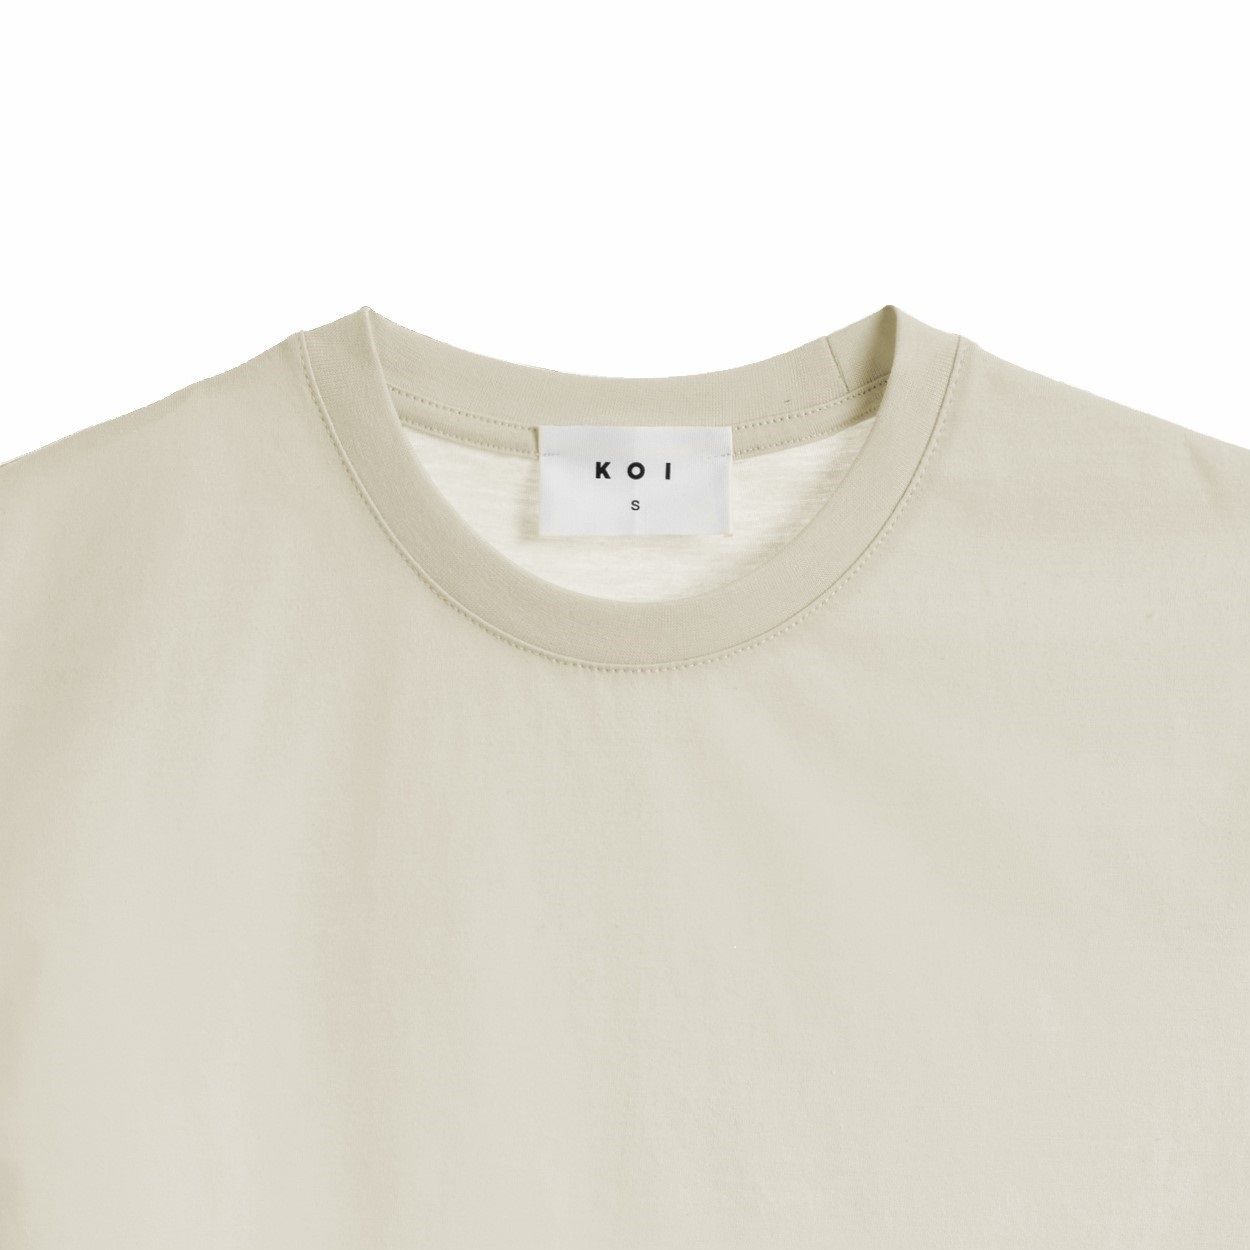 تی شرت آستین کوتاه زنانه کوی مدل رگولار هی گرل کد 444 رنگ شیری -  - 2